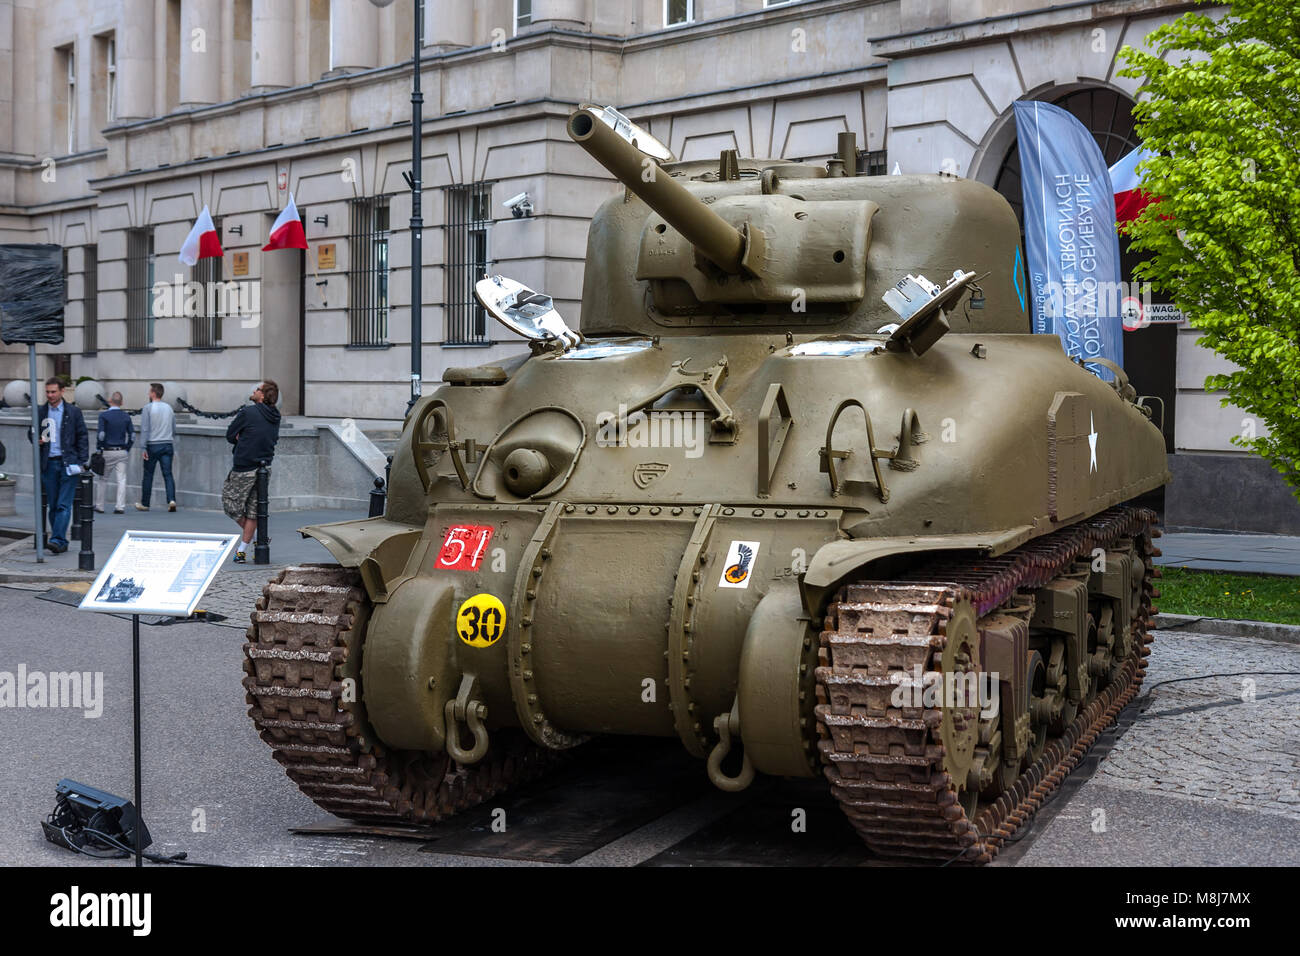 Sherman Panzer, kanadische Version M4, während des Zweiten Weltkriegs verwendet 70. Jahrestag des WW II. Warschau, Polen - Mai 08, 2015 Stockfoto